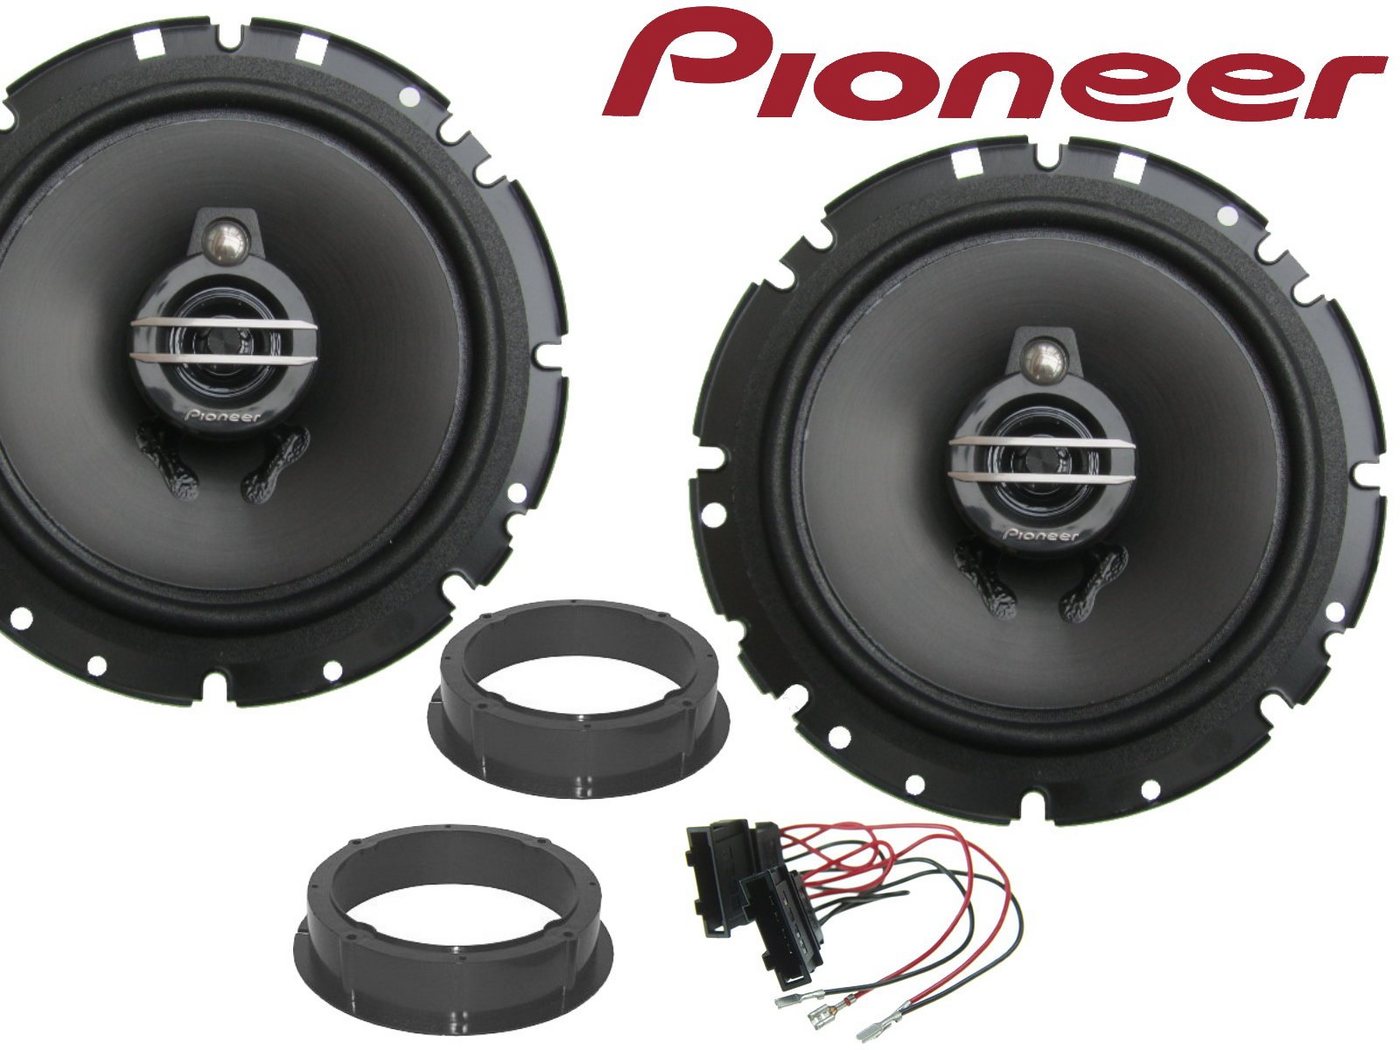 DSX Pioneer 3Wege passend für Seat Altea XL Bj 04-15 Auto-Lautsprecher (40 W) von DSX